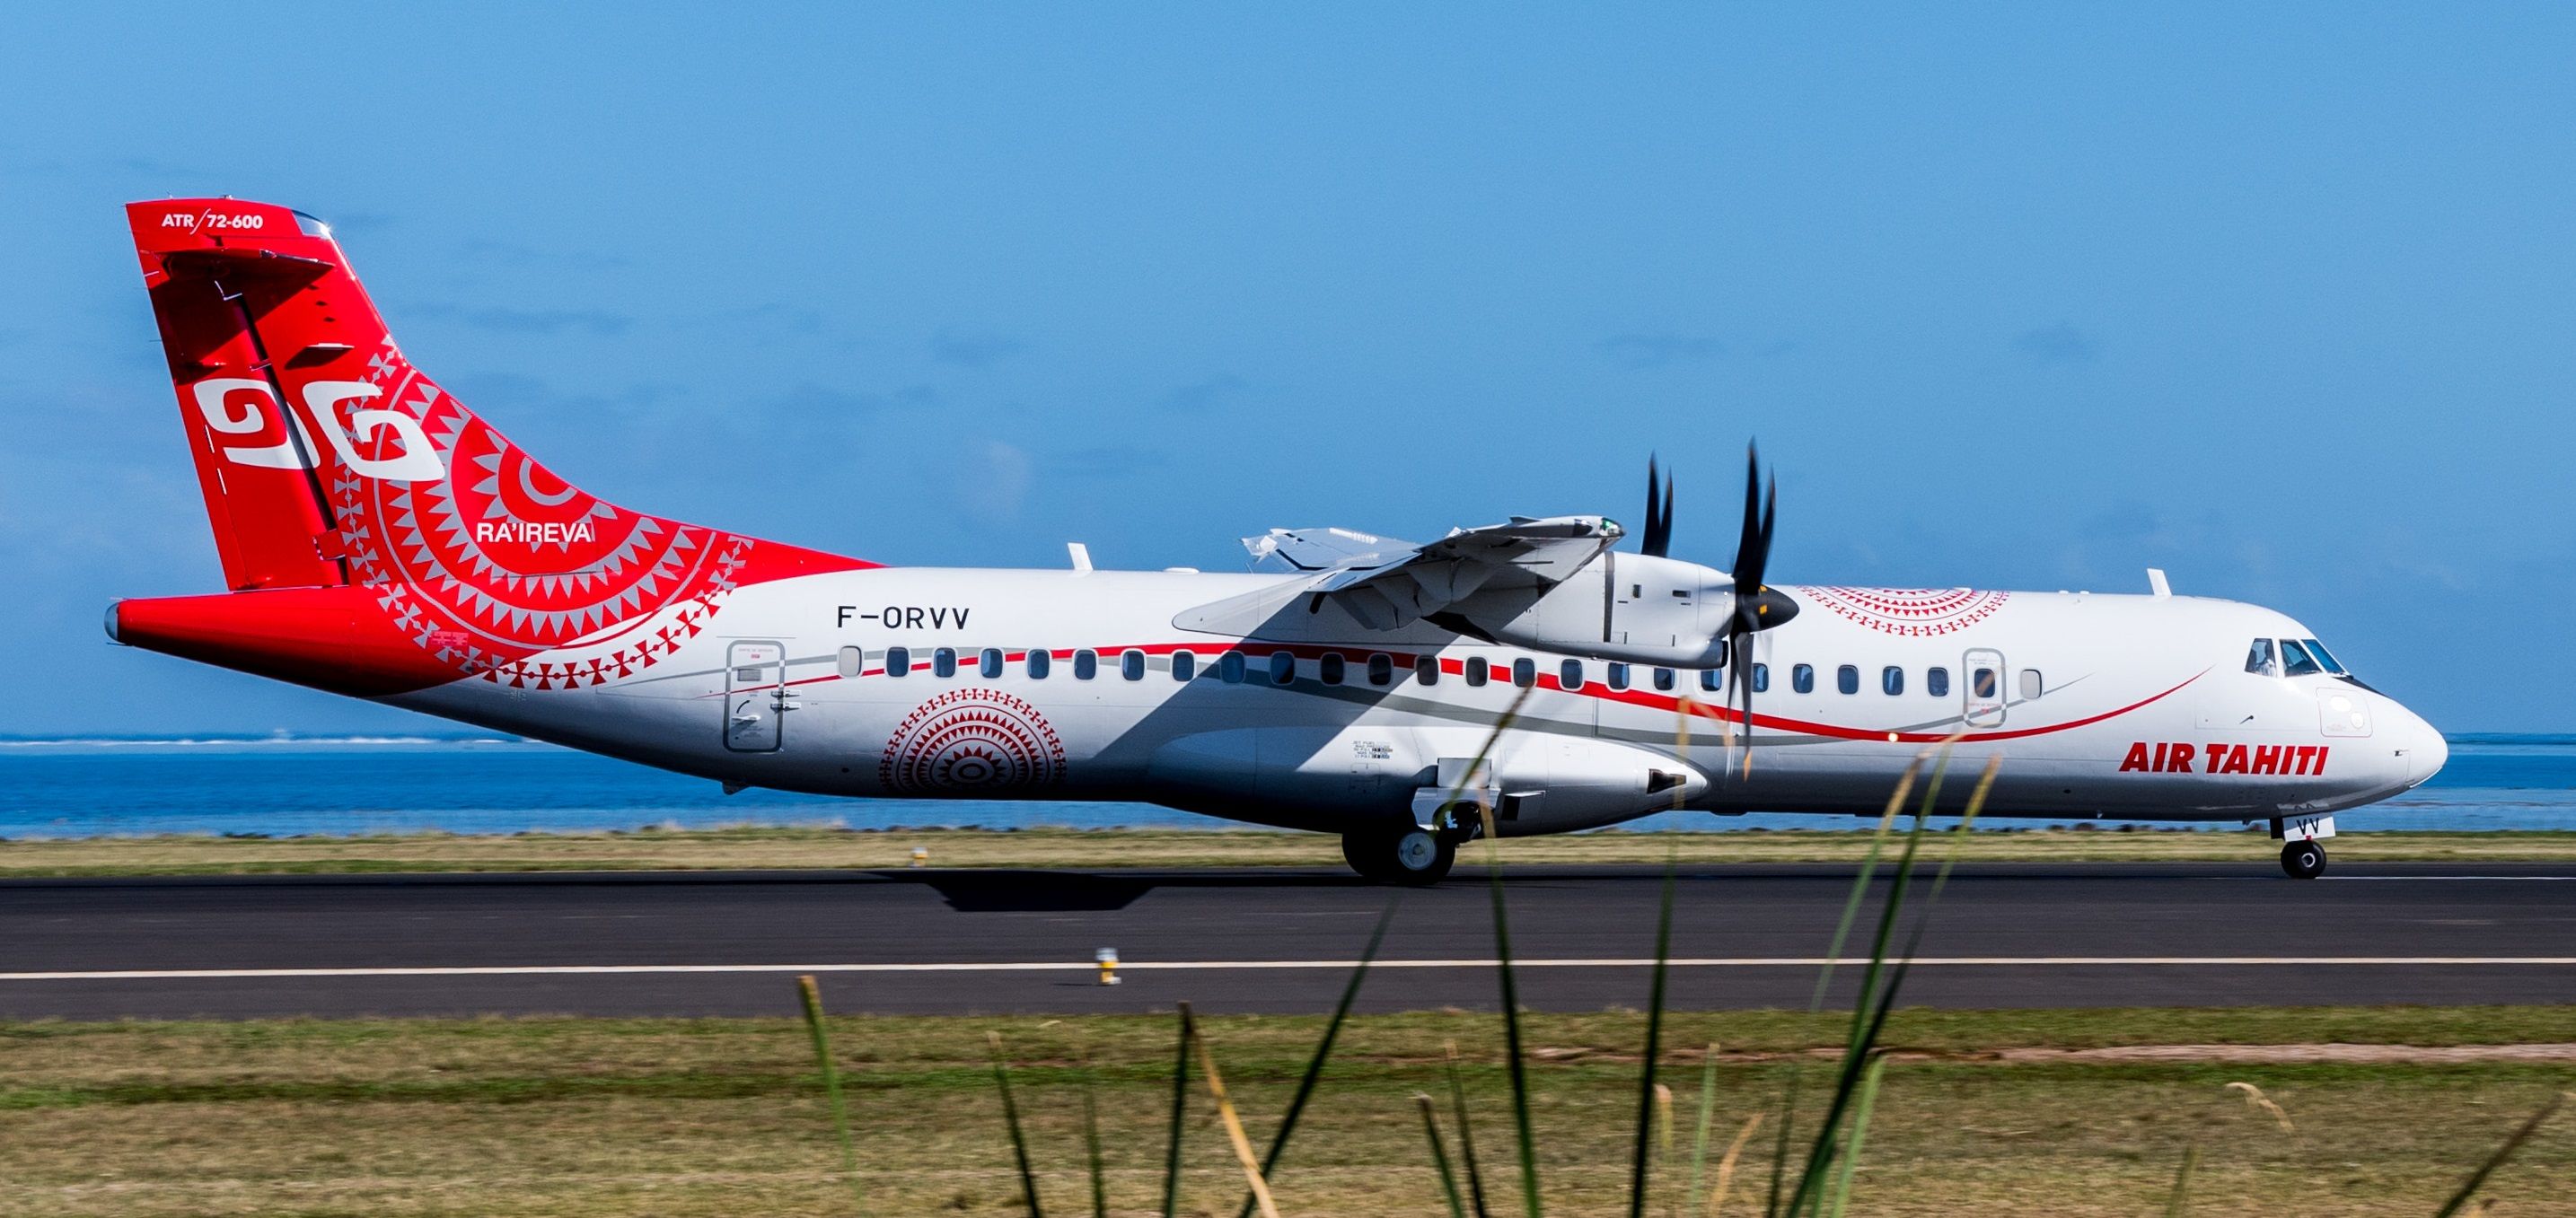 An Air Tahiti ATR aircraft on the runway.